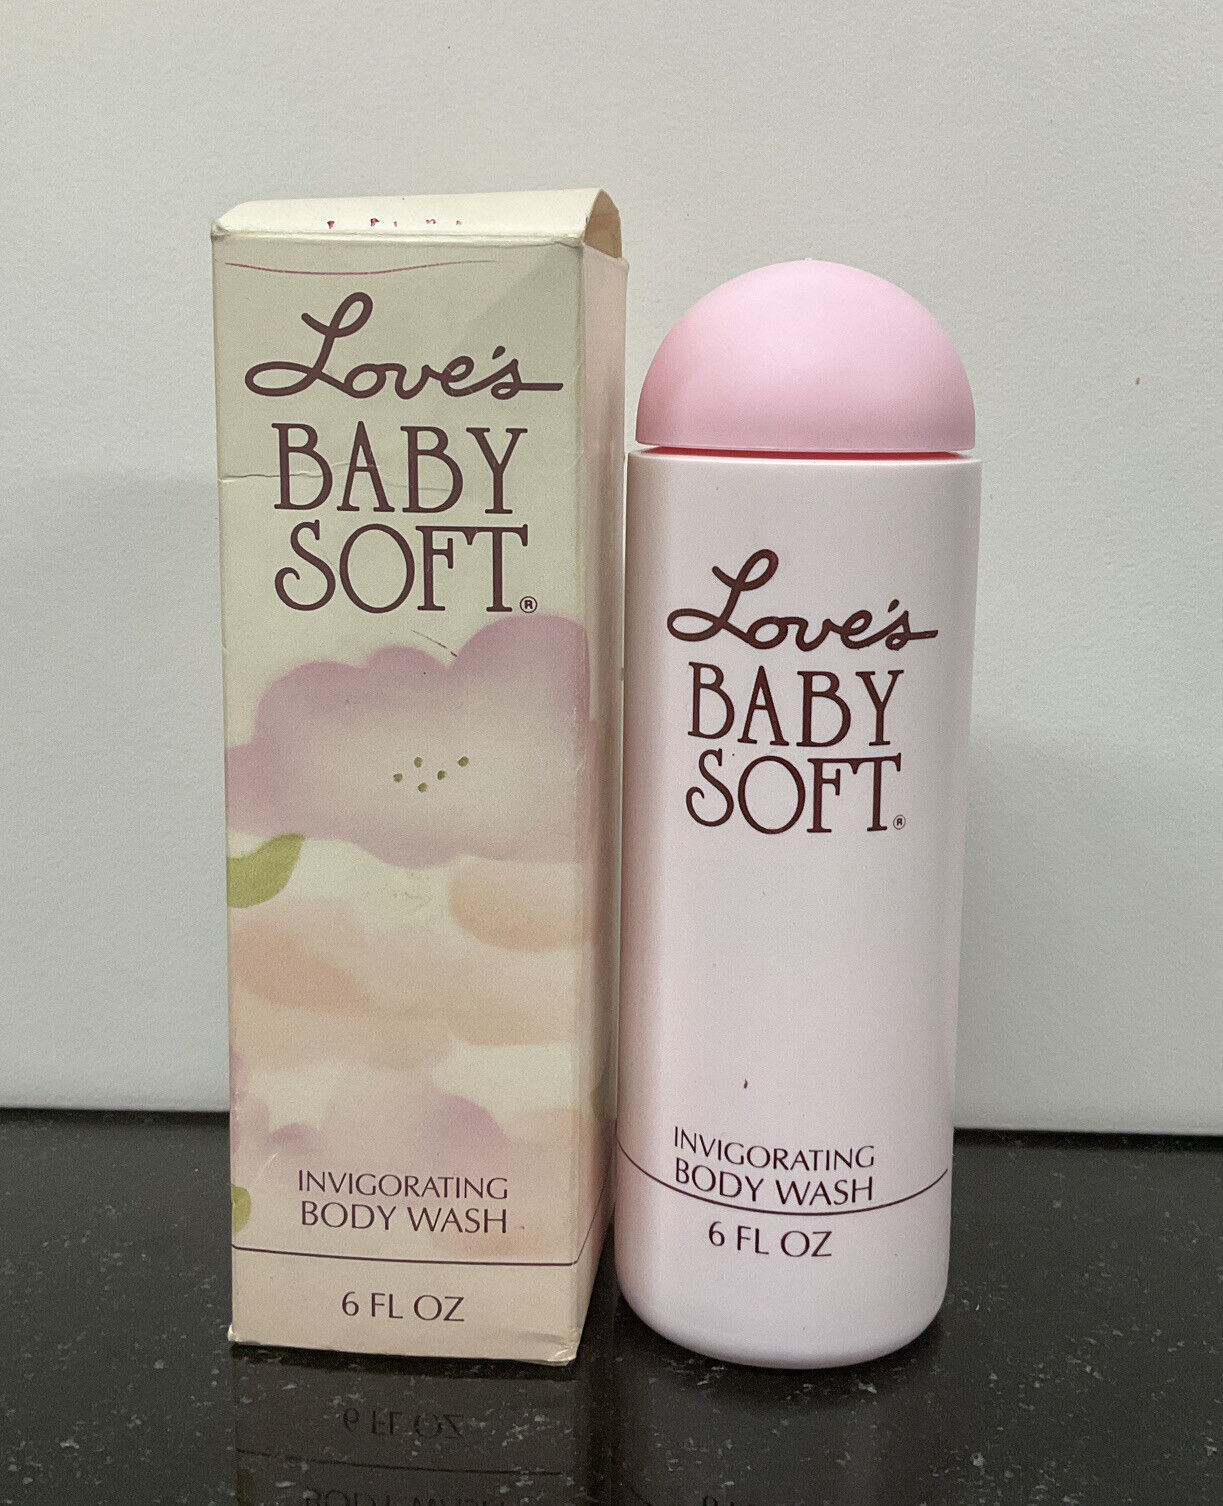 Love's Baby Soft by Mem Invigorating Body Wash 6 OZ